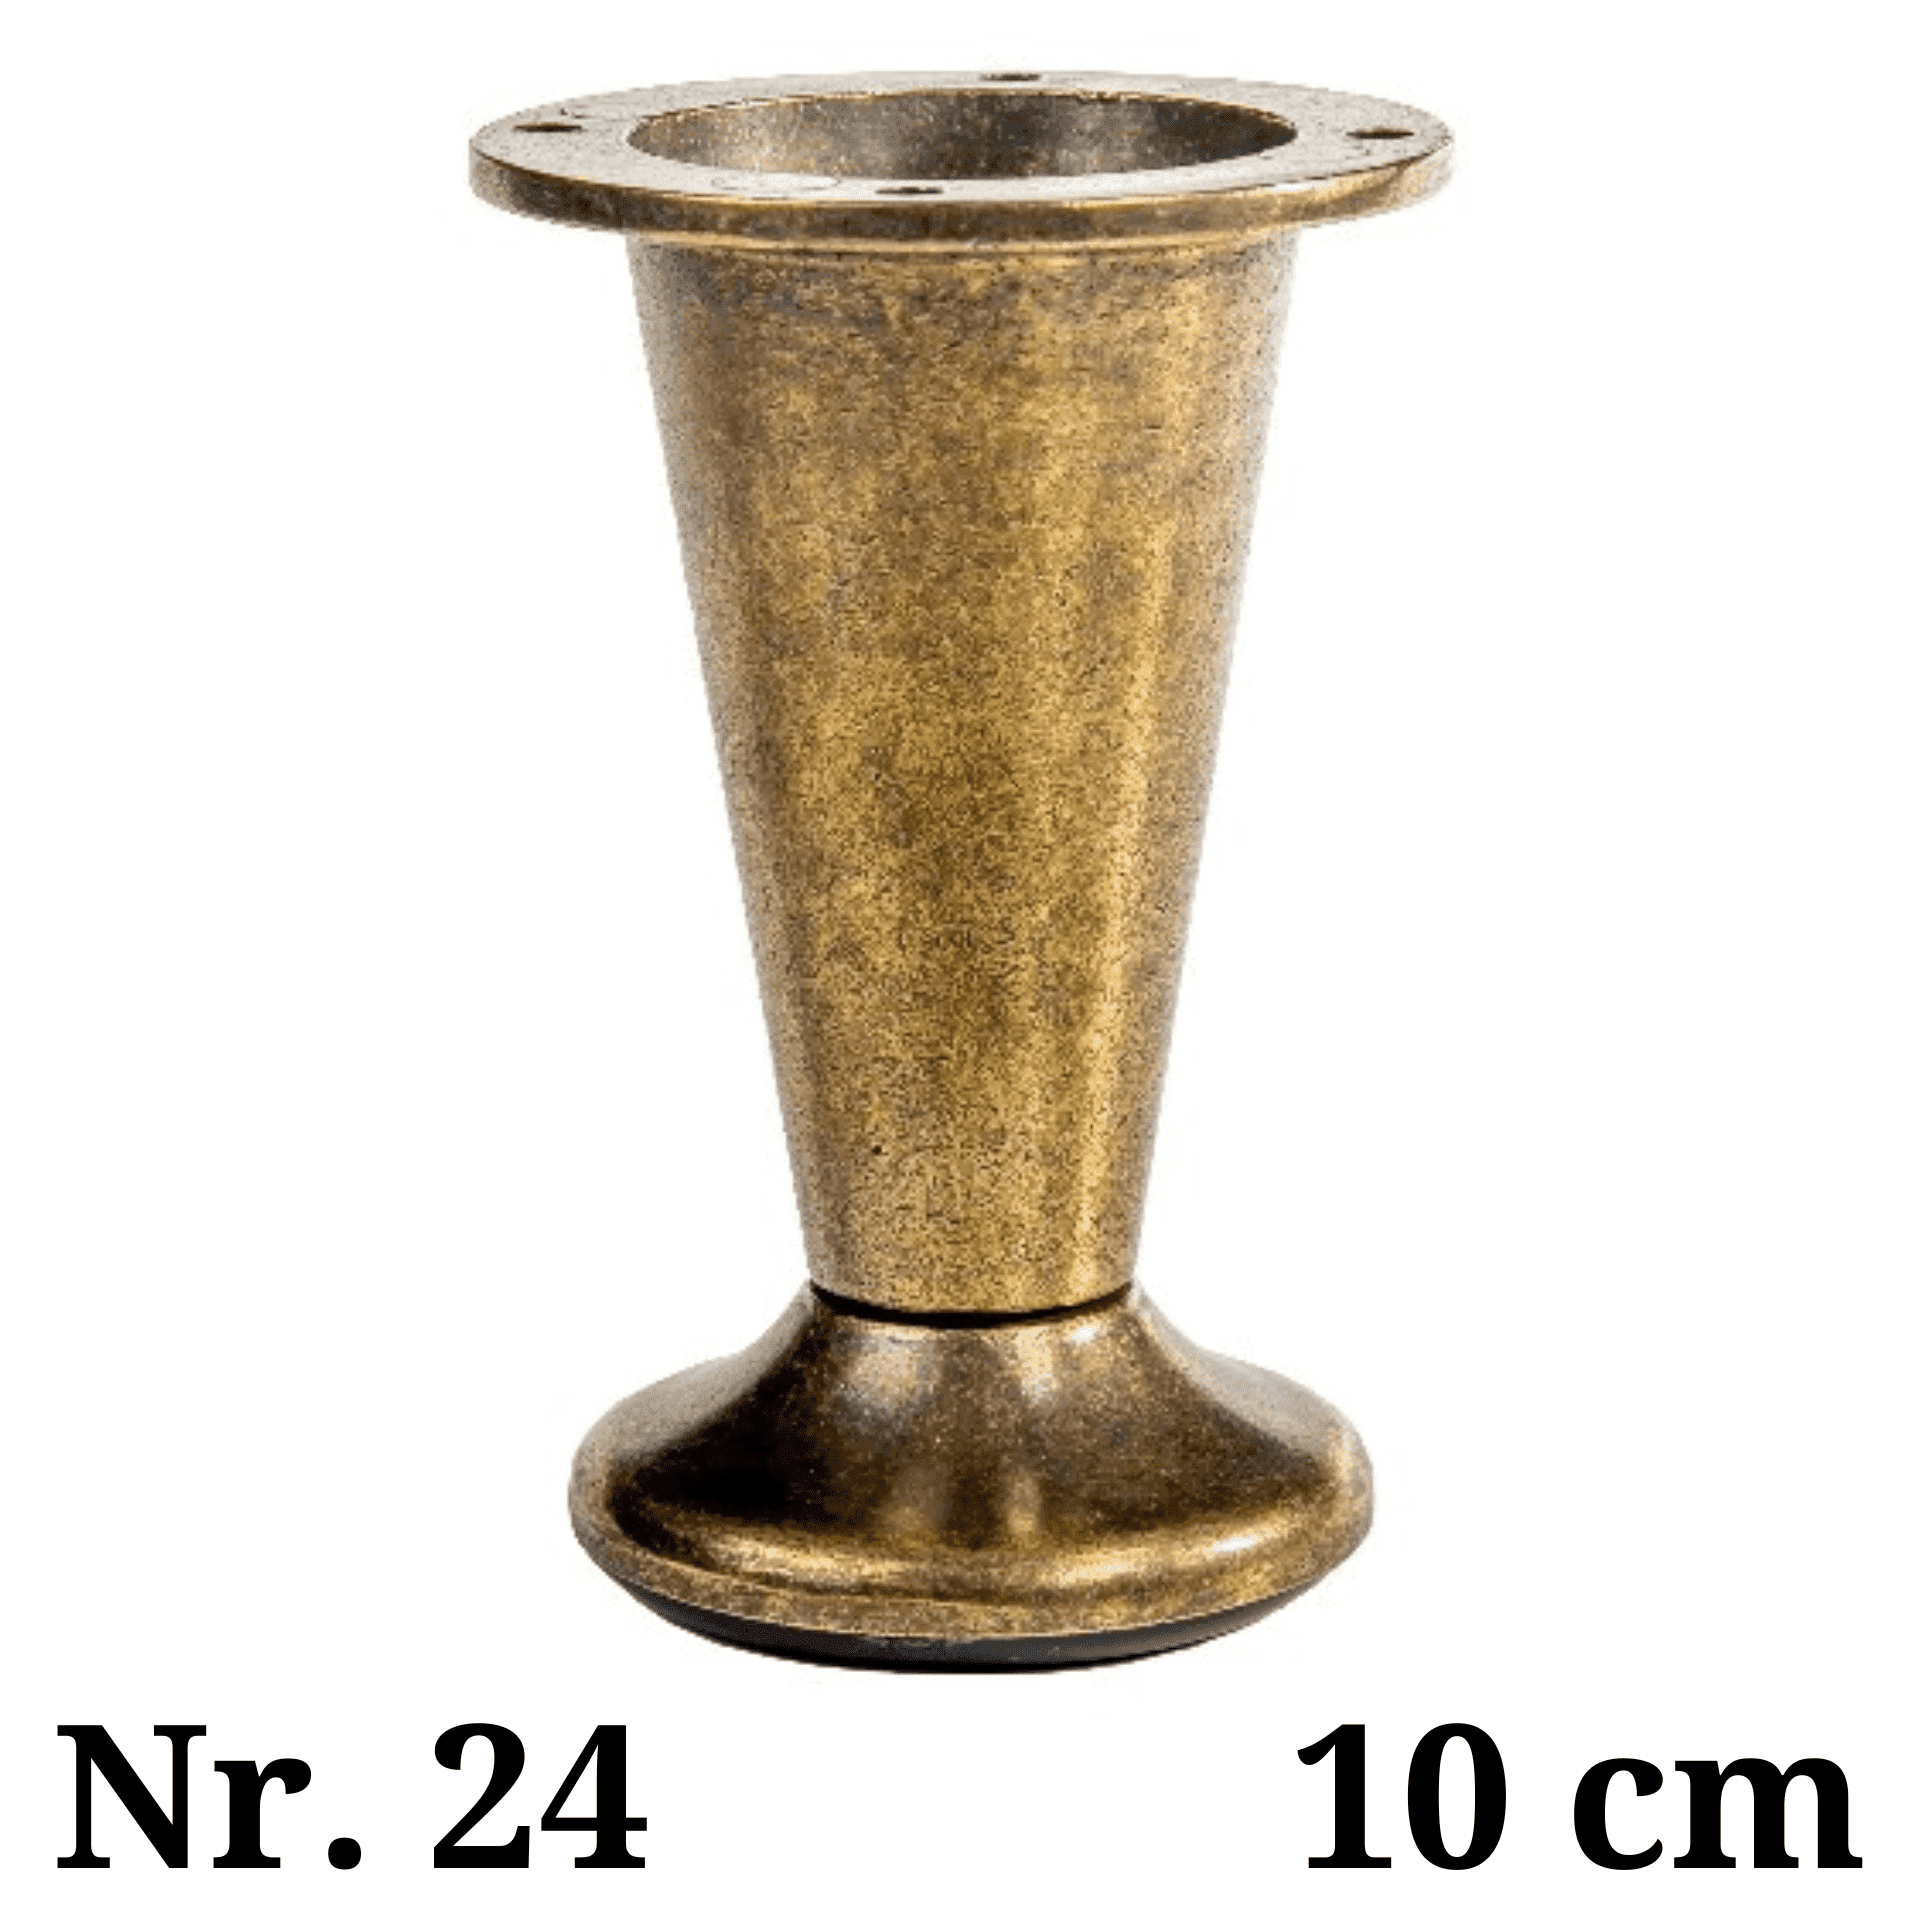 Metalinė kojelė Nr. 24 (40 €) 2 vnt.